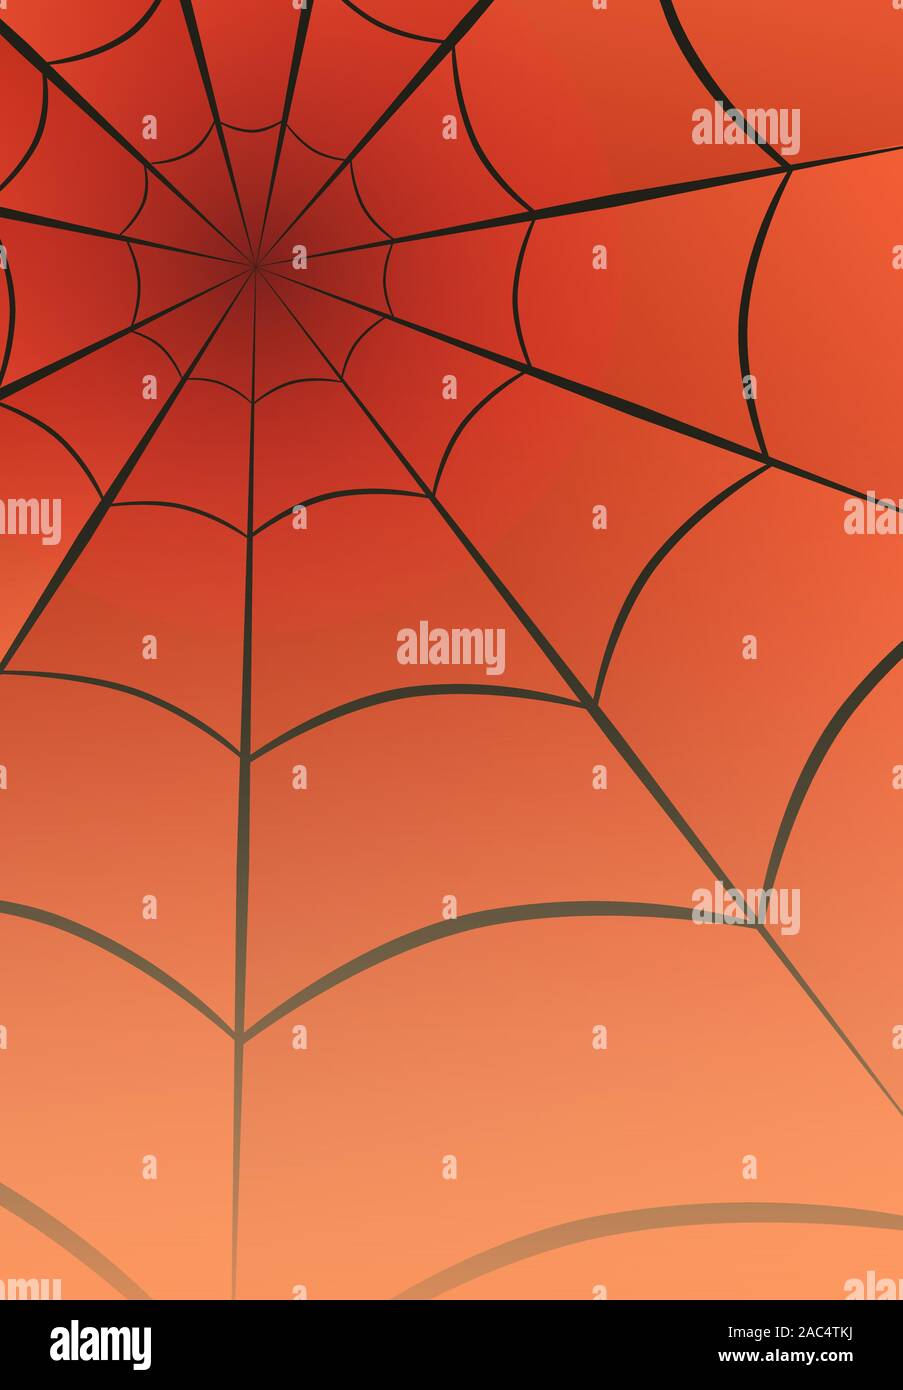 Web spider Graphic Design Pattern schwarzer Umriss für net-Struktur abstrakter Form wallpaper Illustration Vektor auf Cartoons stil Gradient bunte Stock Vektor